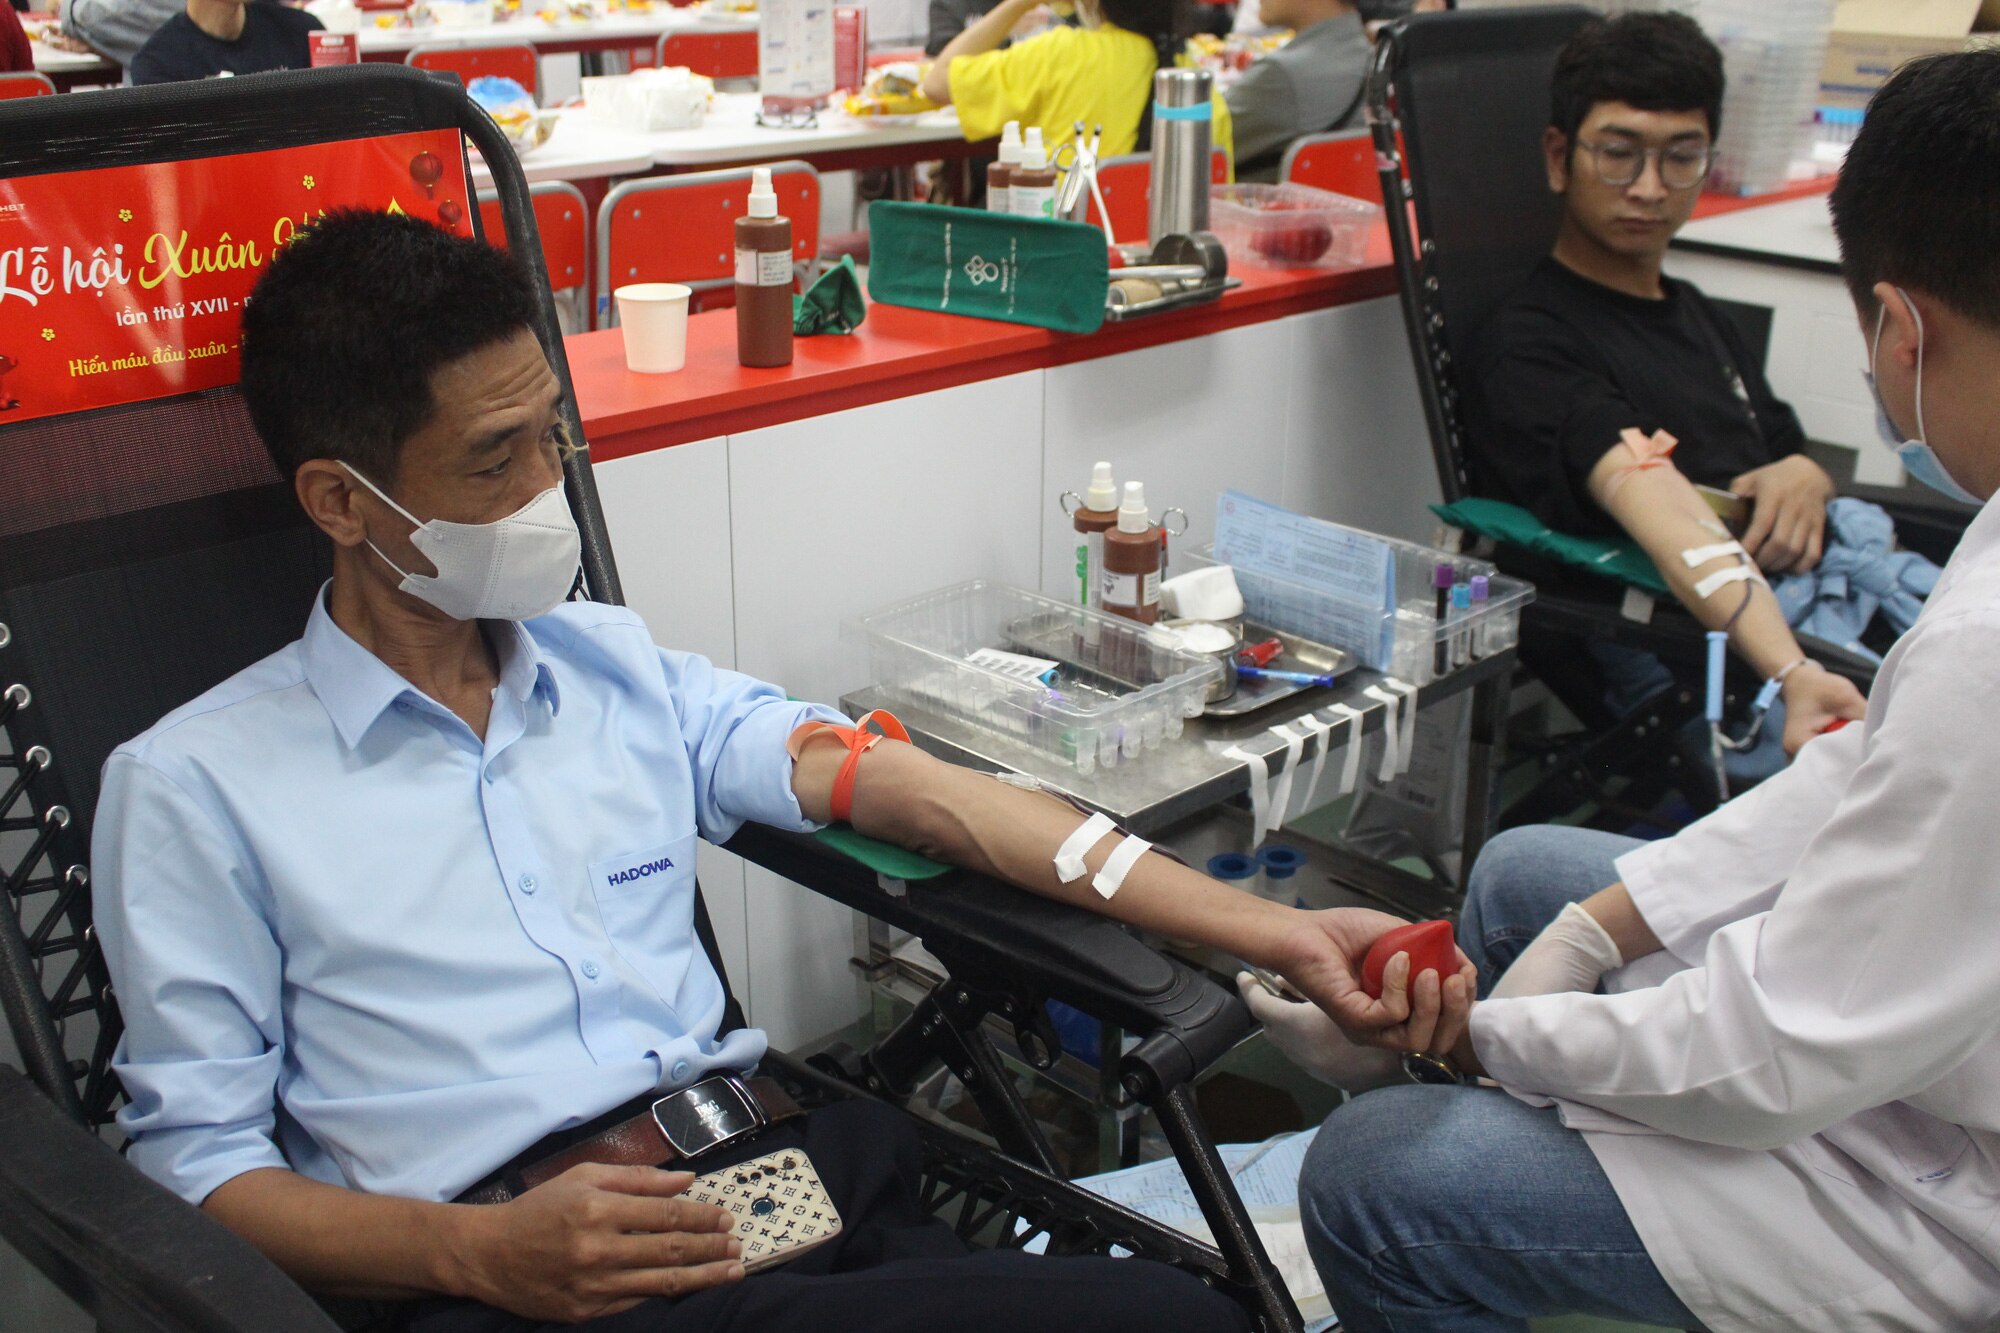 Anh Tường Duy Đông (quận Hà Đông, Hà Nội) tranh thủ giờ nghỉ trưa để hiến máu tình nguyện tại Lễ hội Xuân hồng - Ảnh: DƯƠNG LIỄU